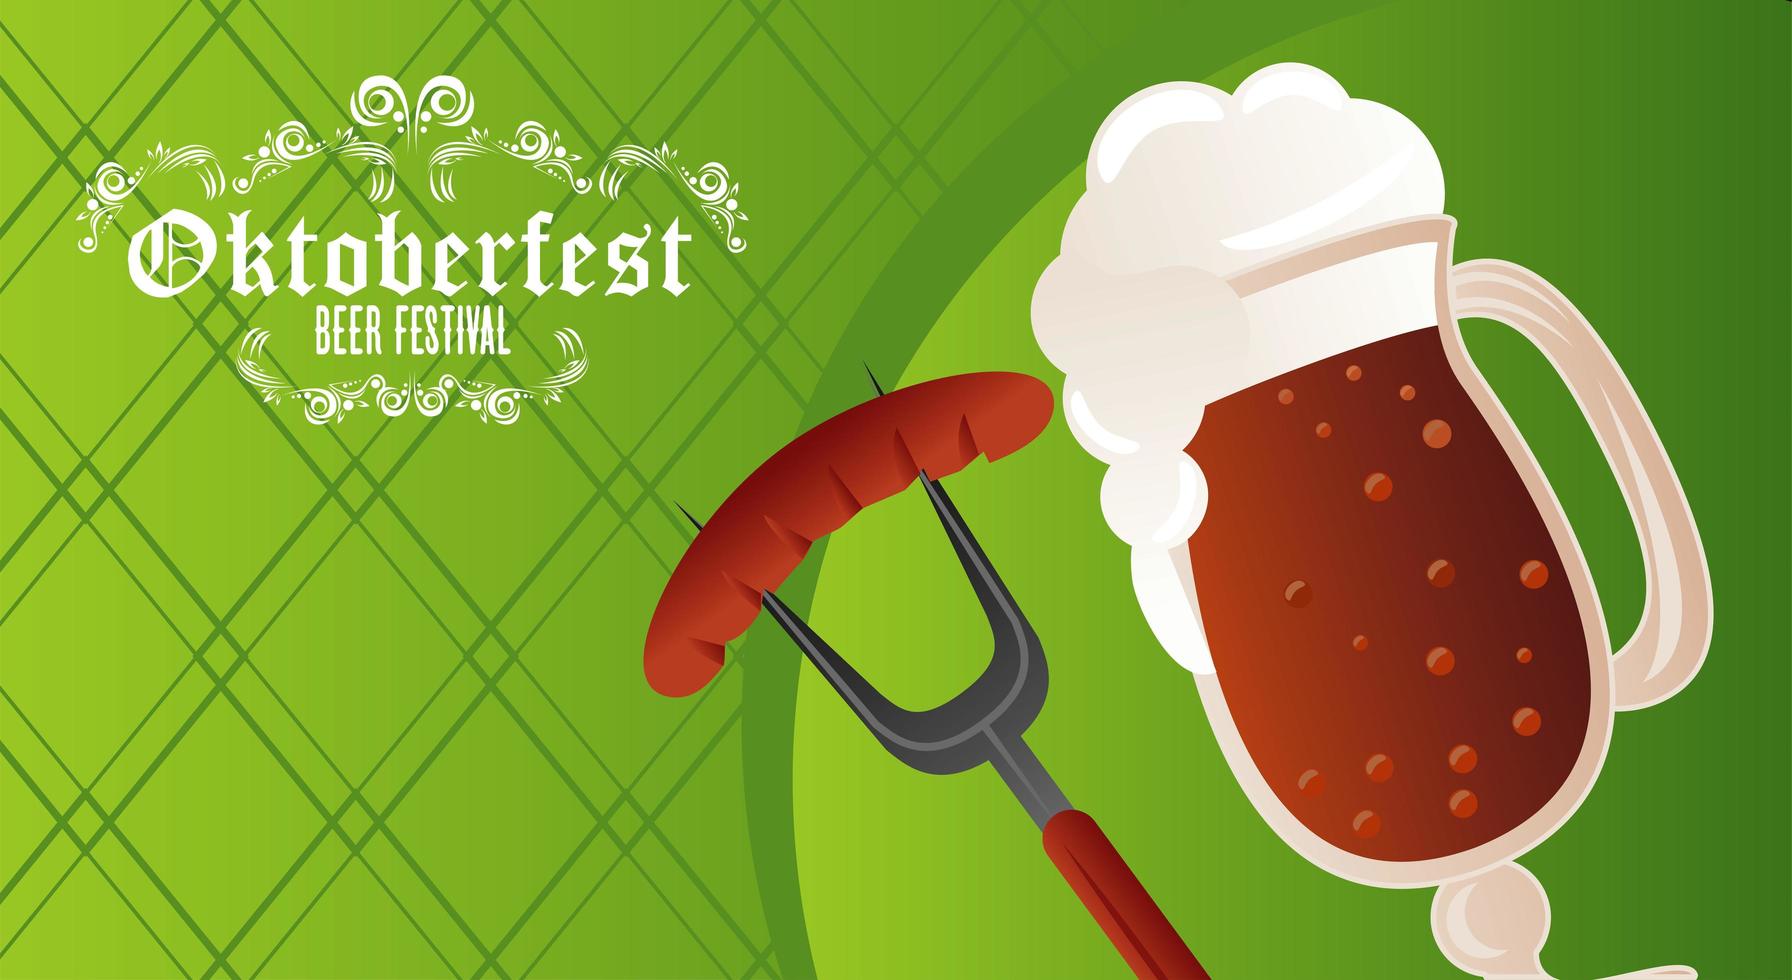 cartel del festival de celebración del oktoberfest con taza de cerveza y salchicha vector